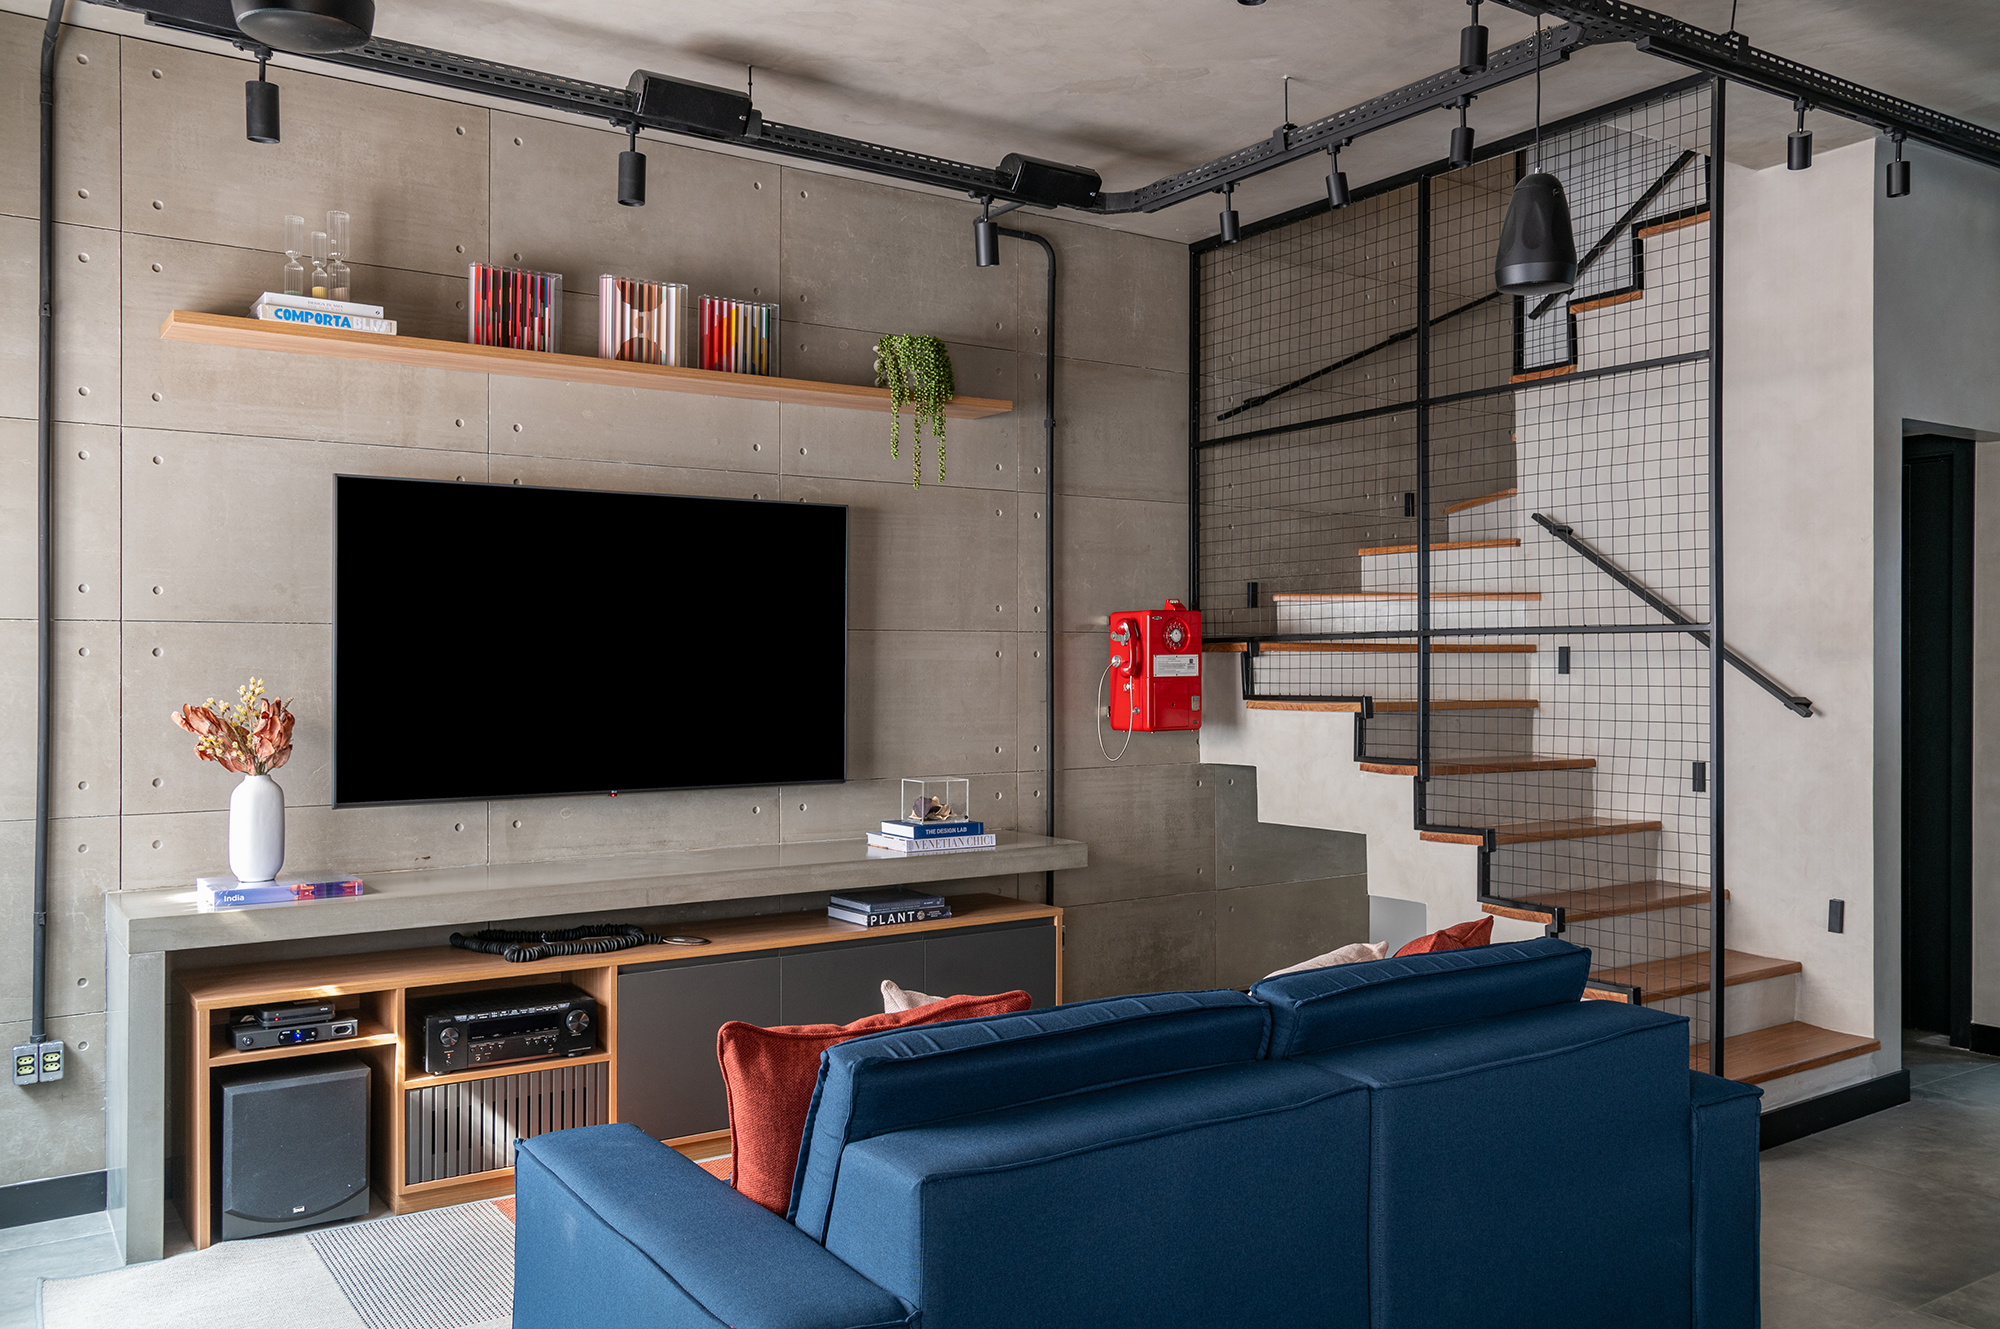 Casa de 200 m² ganha estilo industrial moderno, iluminação aparente e monocromia. Projeto de Dani Espírito Santo. Na foto, escada com guarda-corpo de serralheria. Sala de TV com sofá azul.